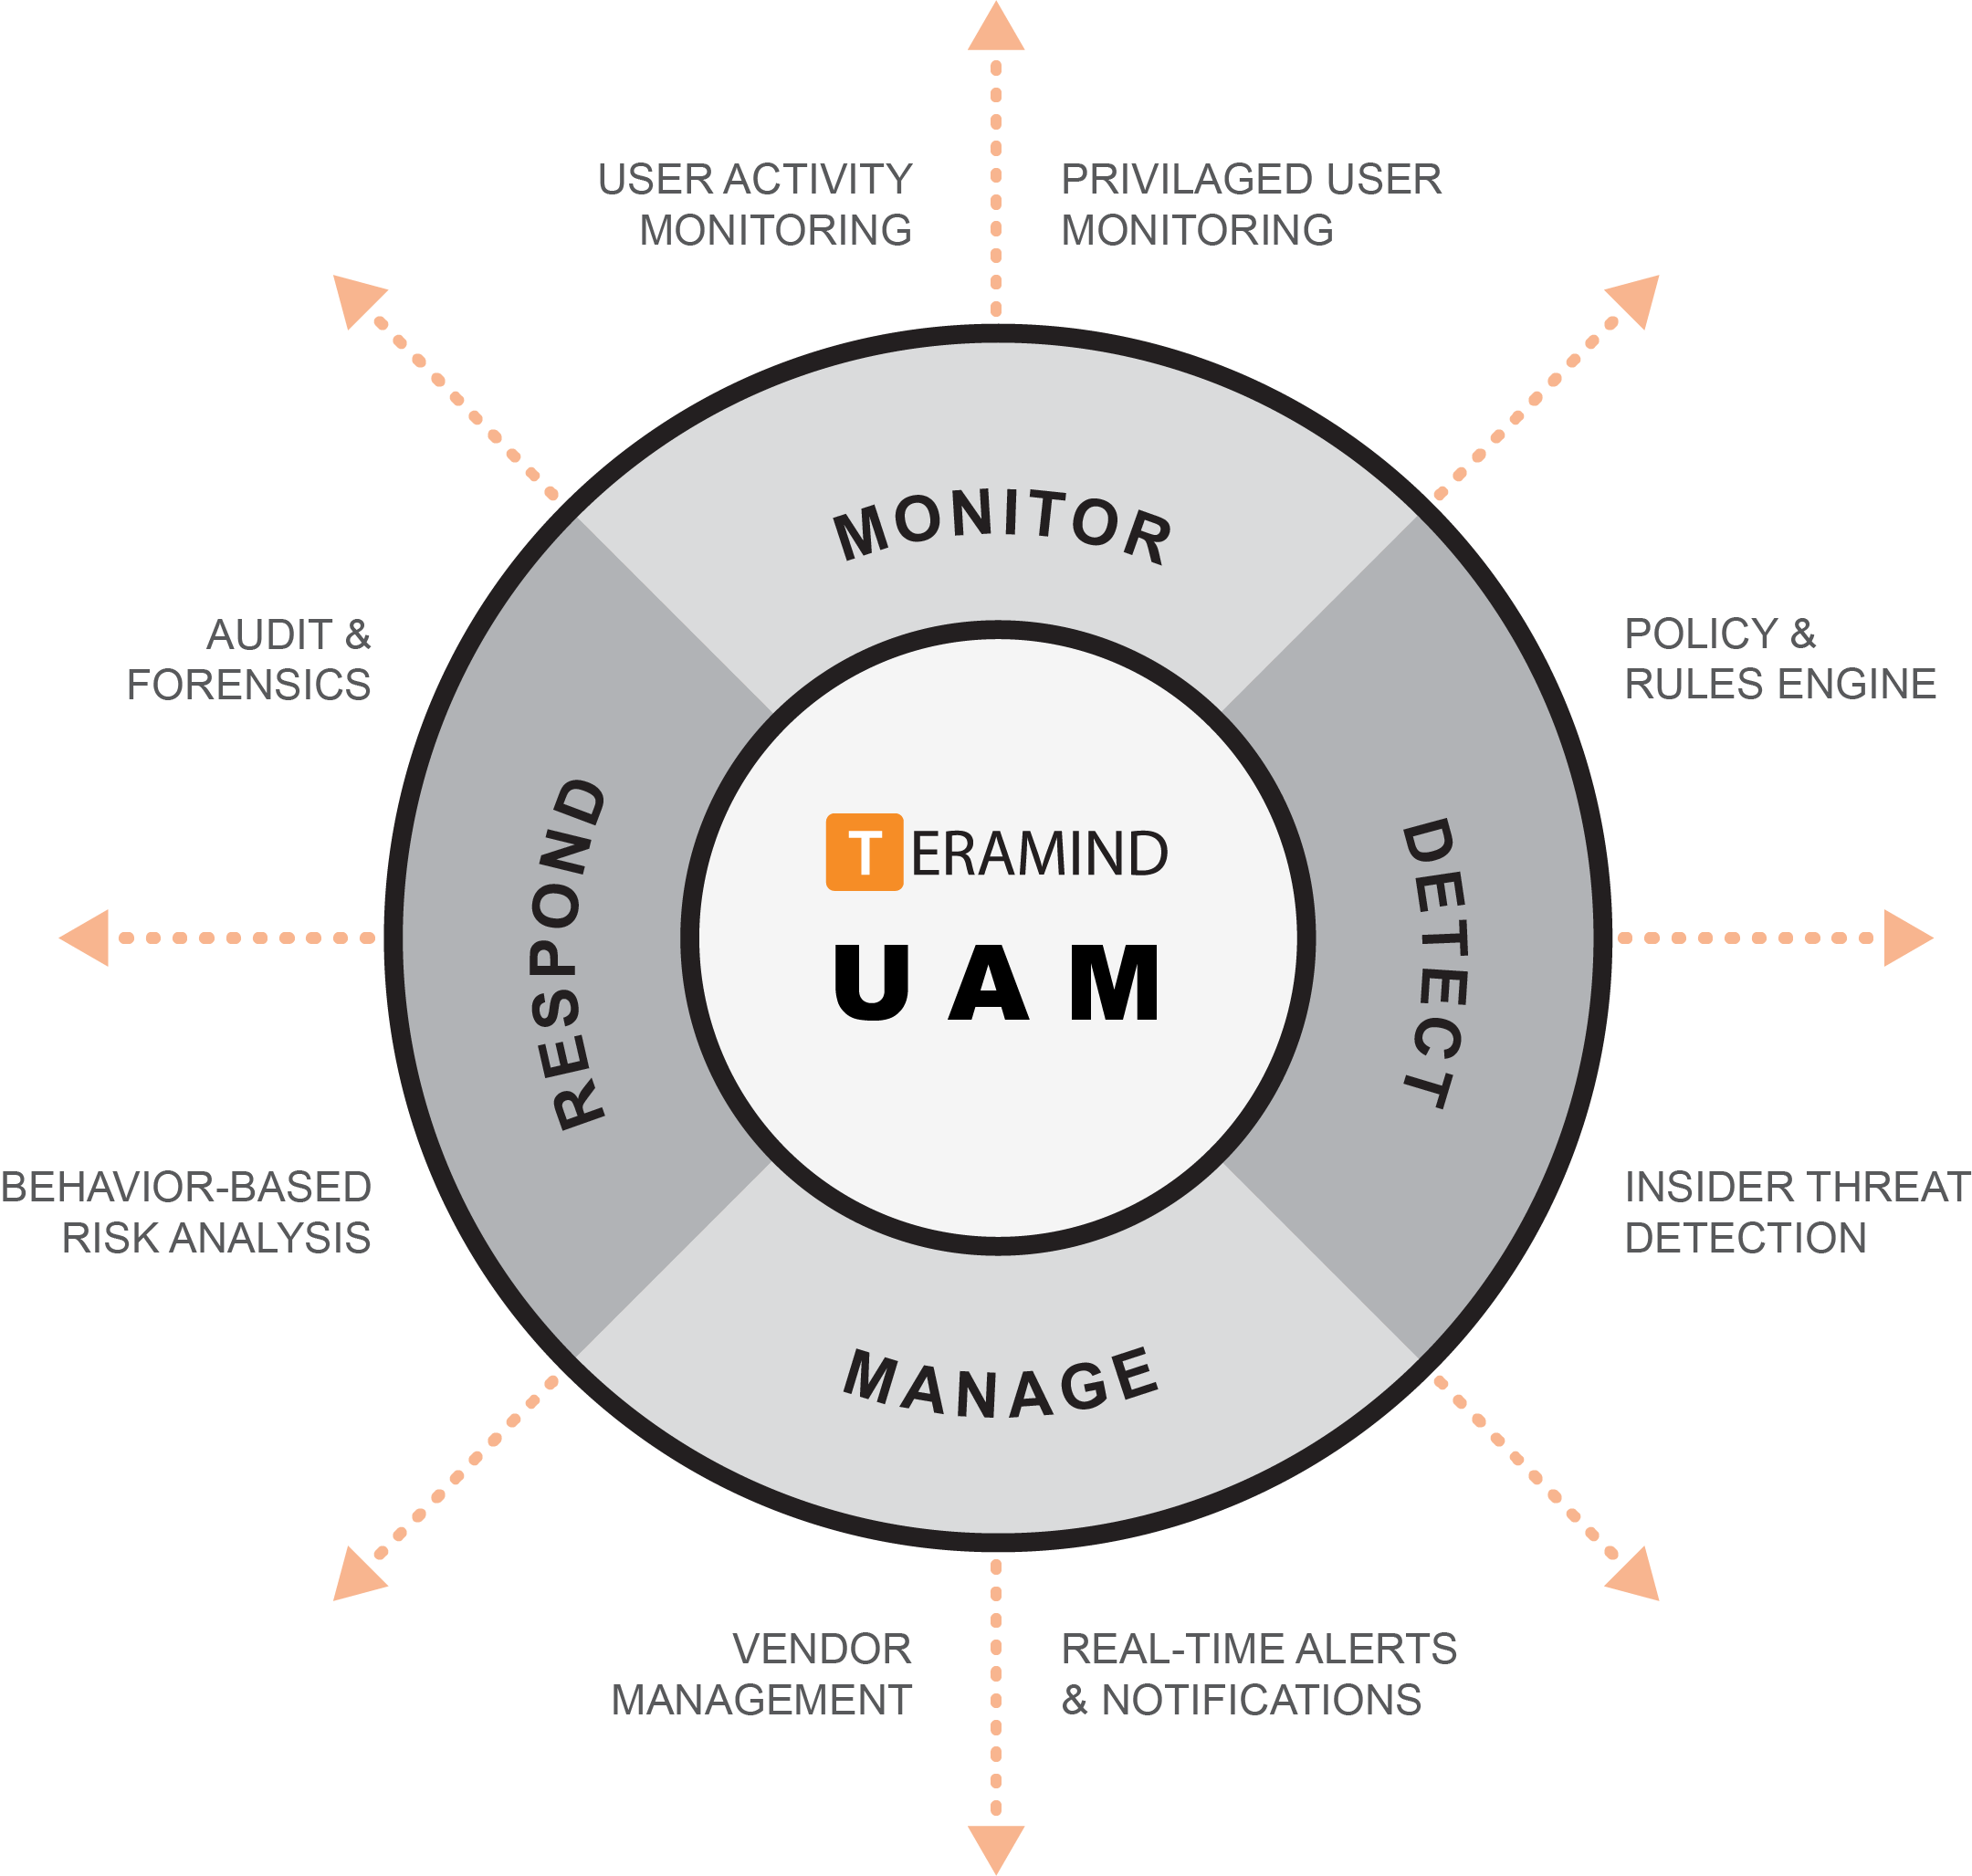 Teramind-UAM-value-diagram-2019-01-17-2019-06-01